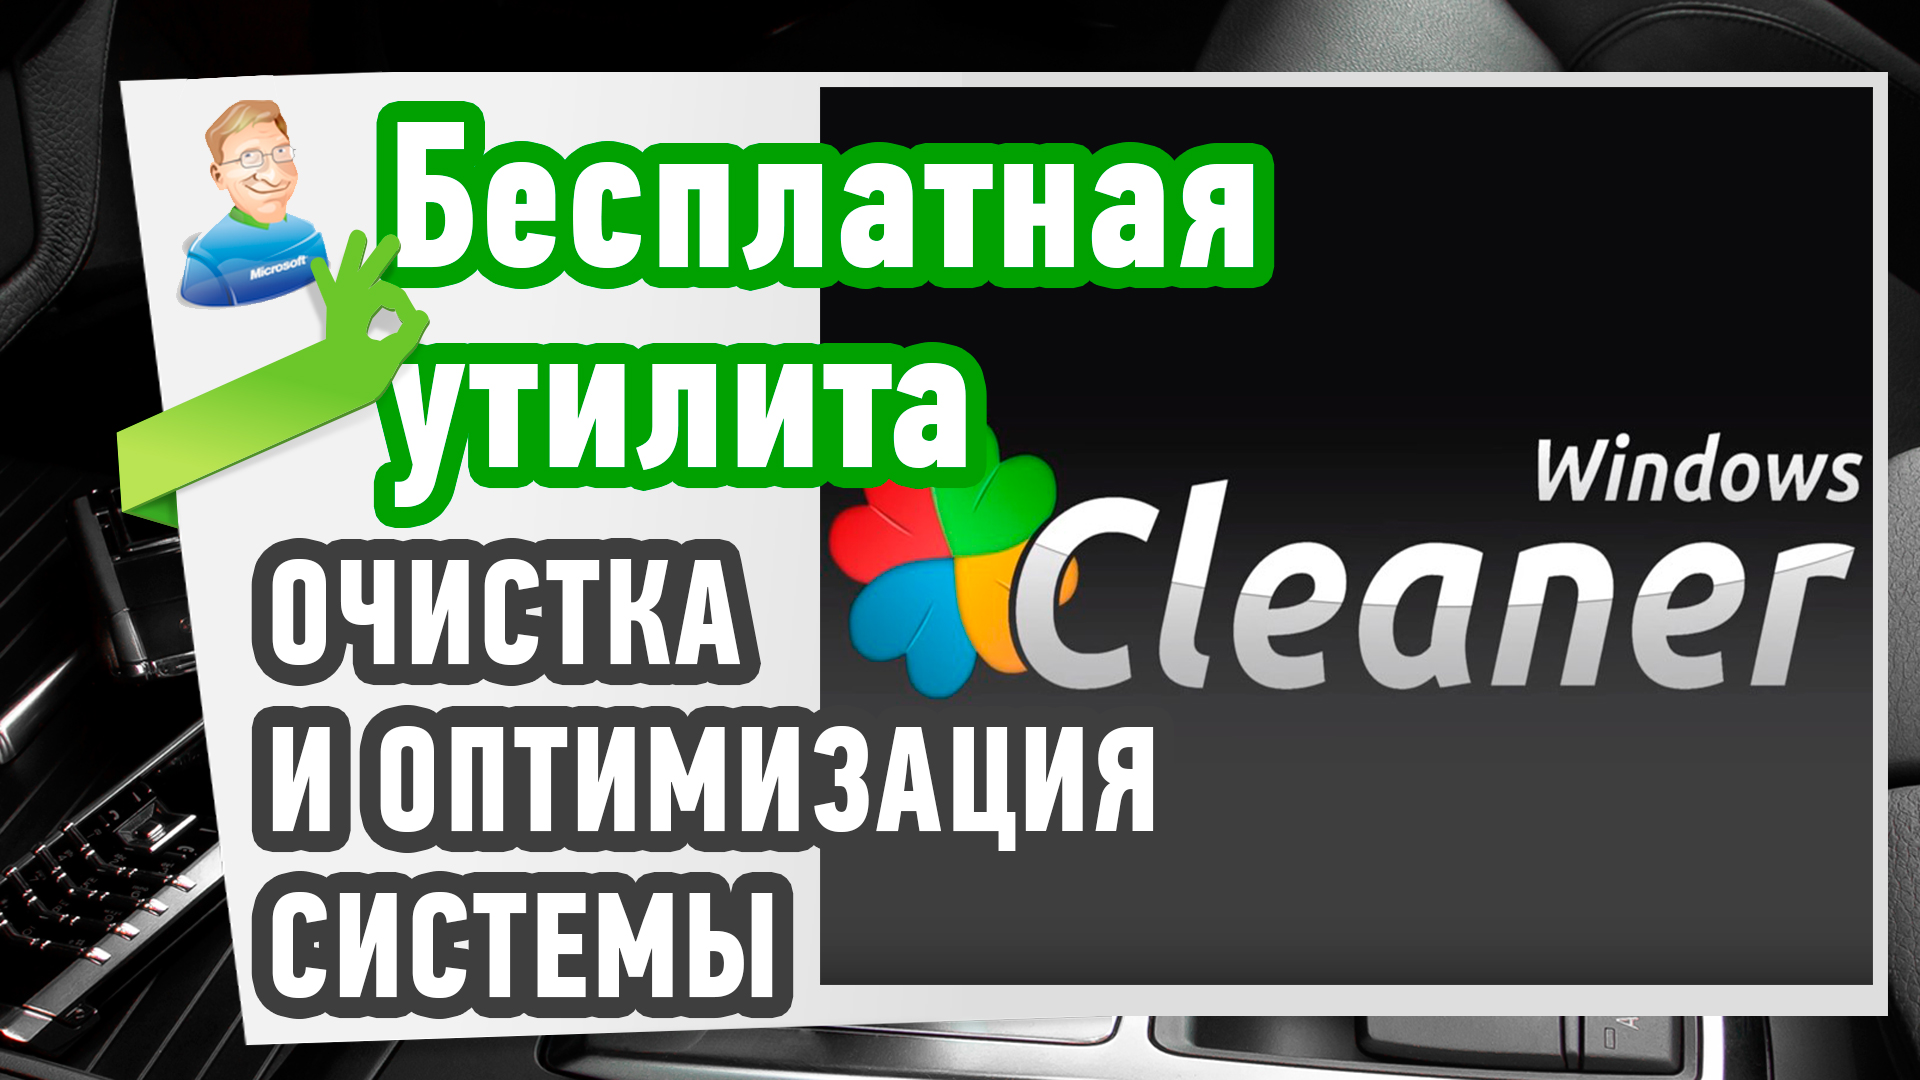 Очистка и оптимизация системы. Бесплатная утилита Windows Cleaner